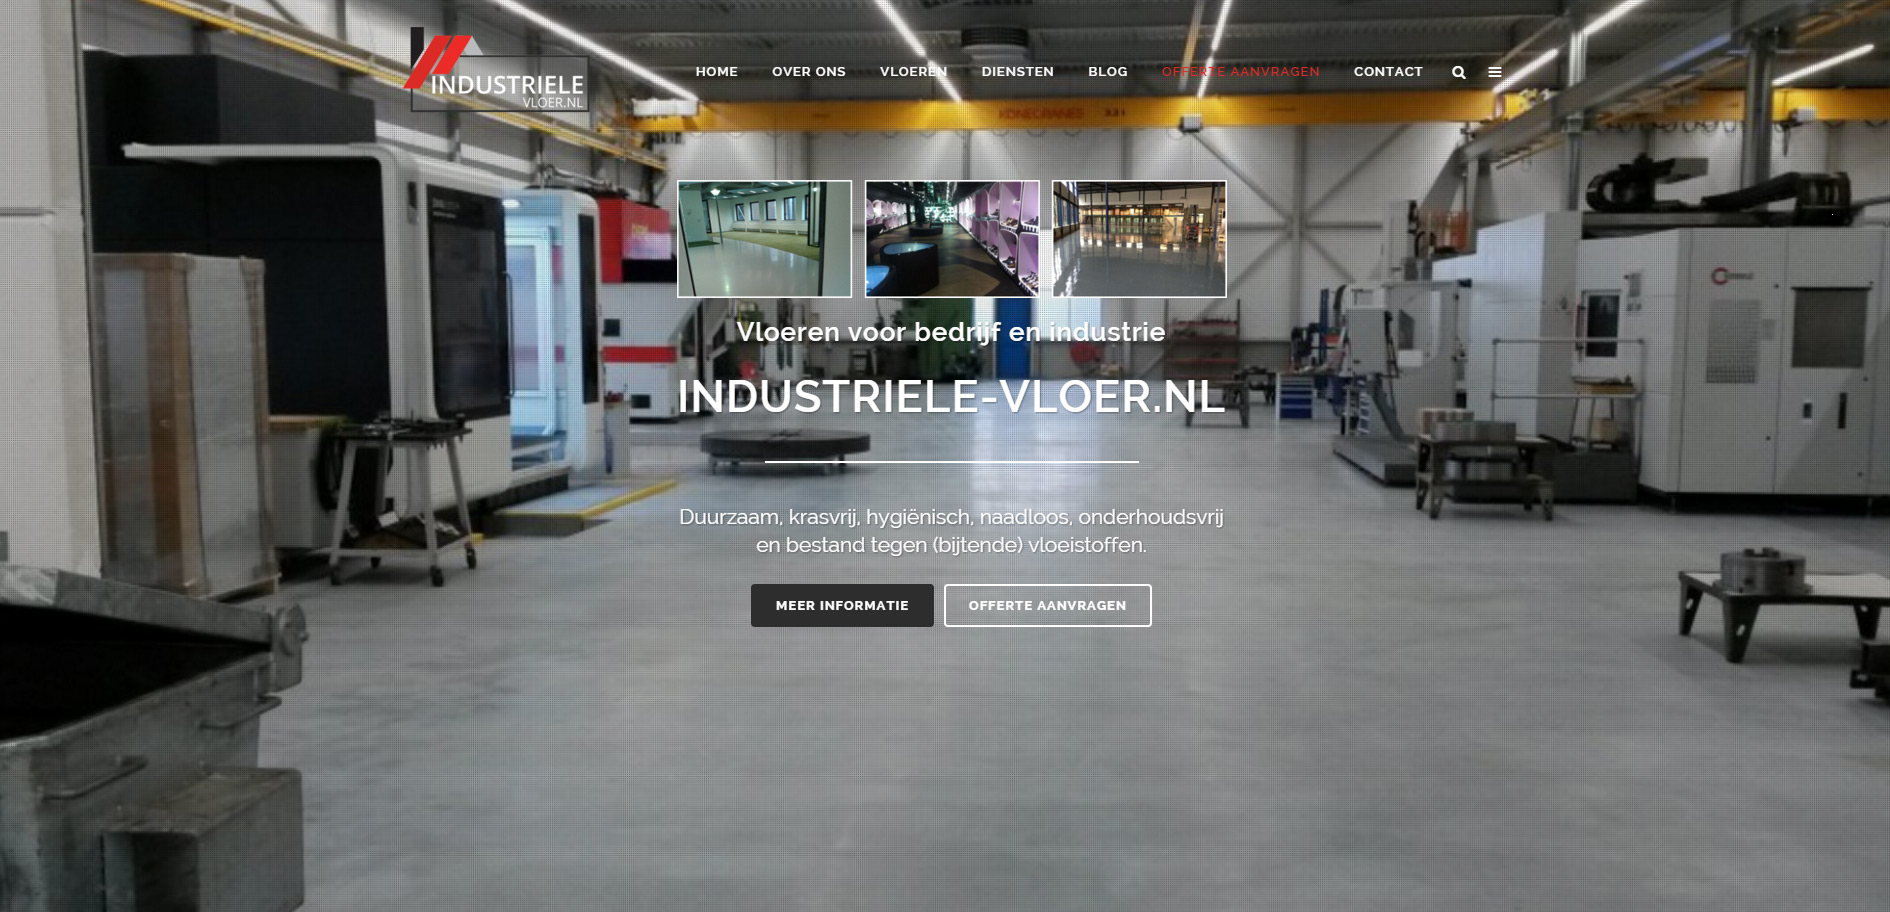 Industriele-vloer.nl